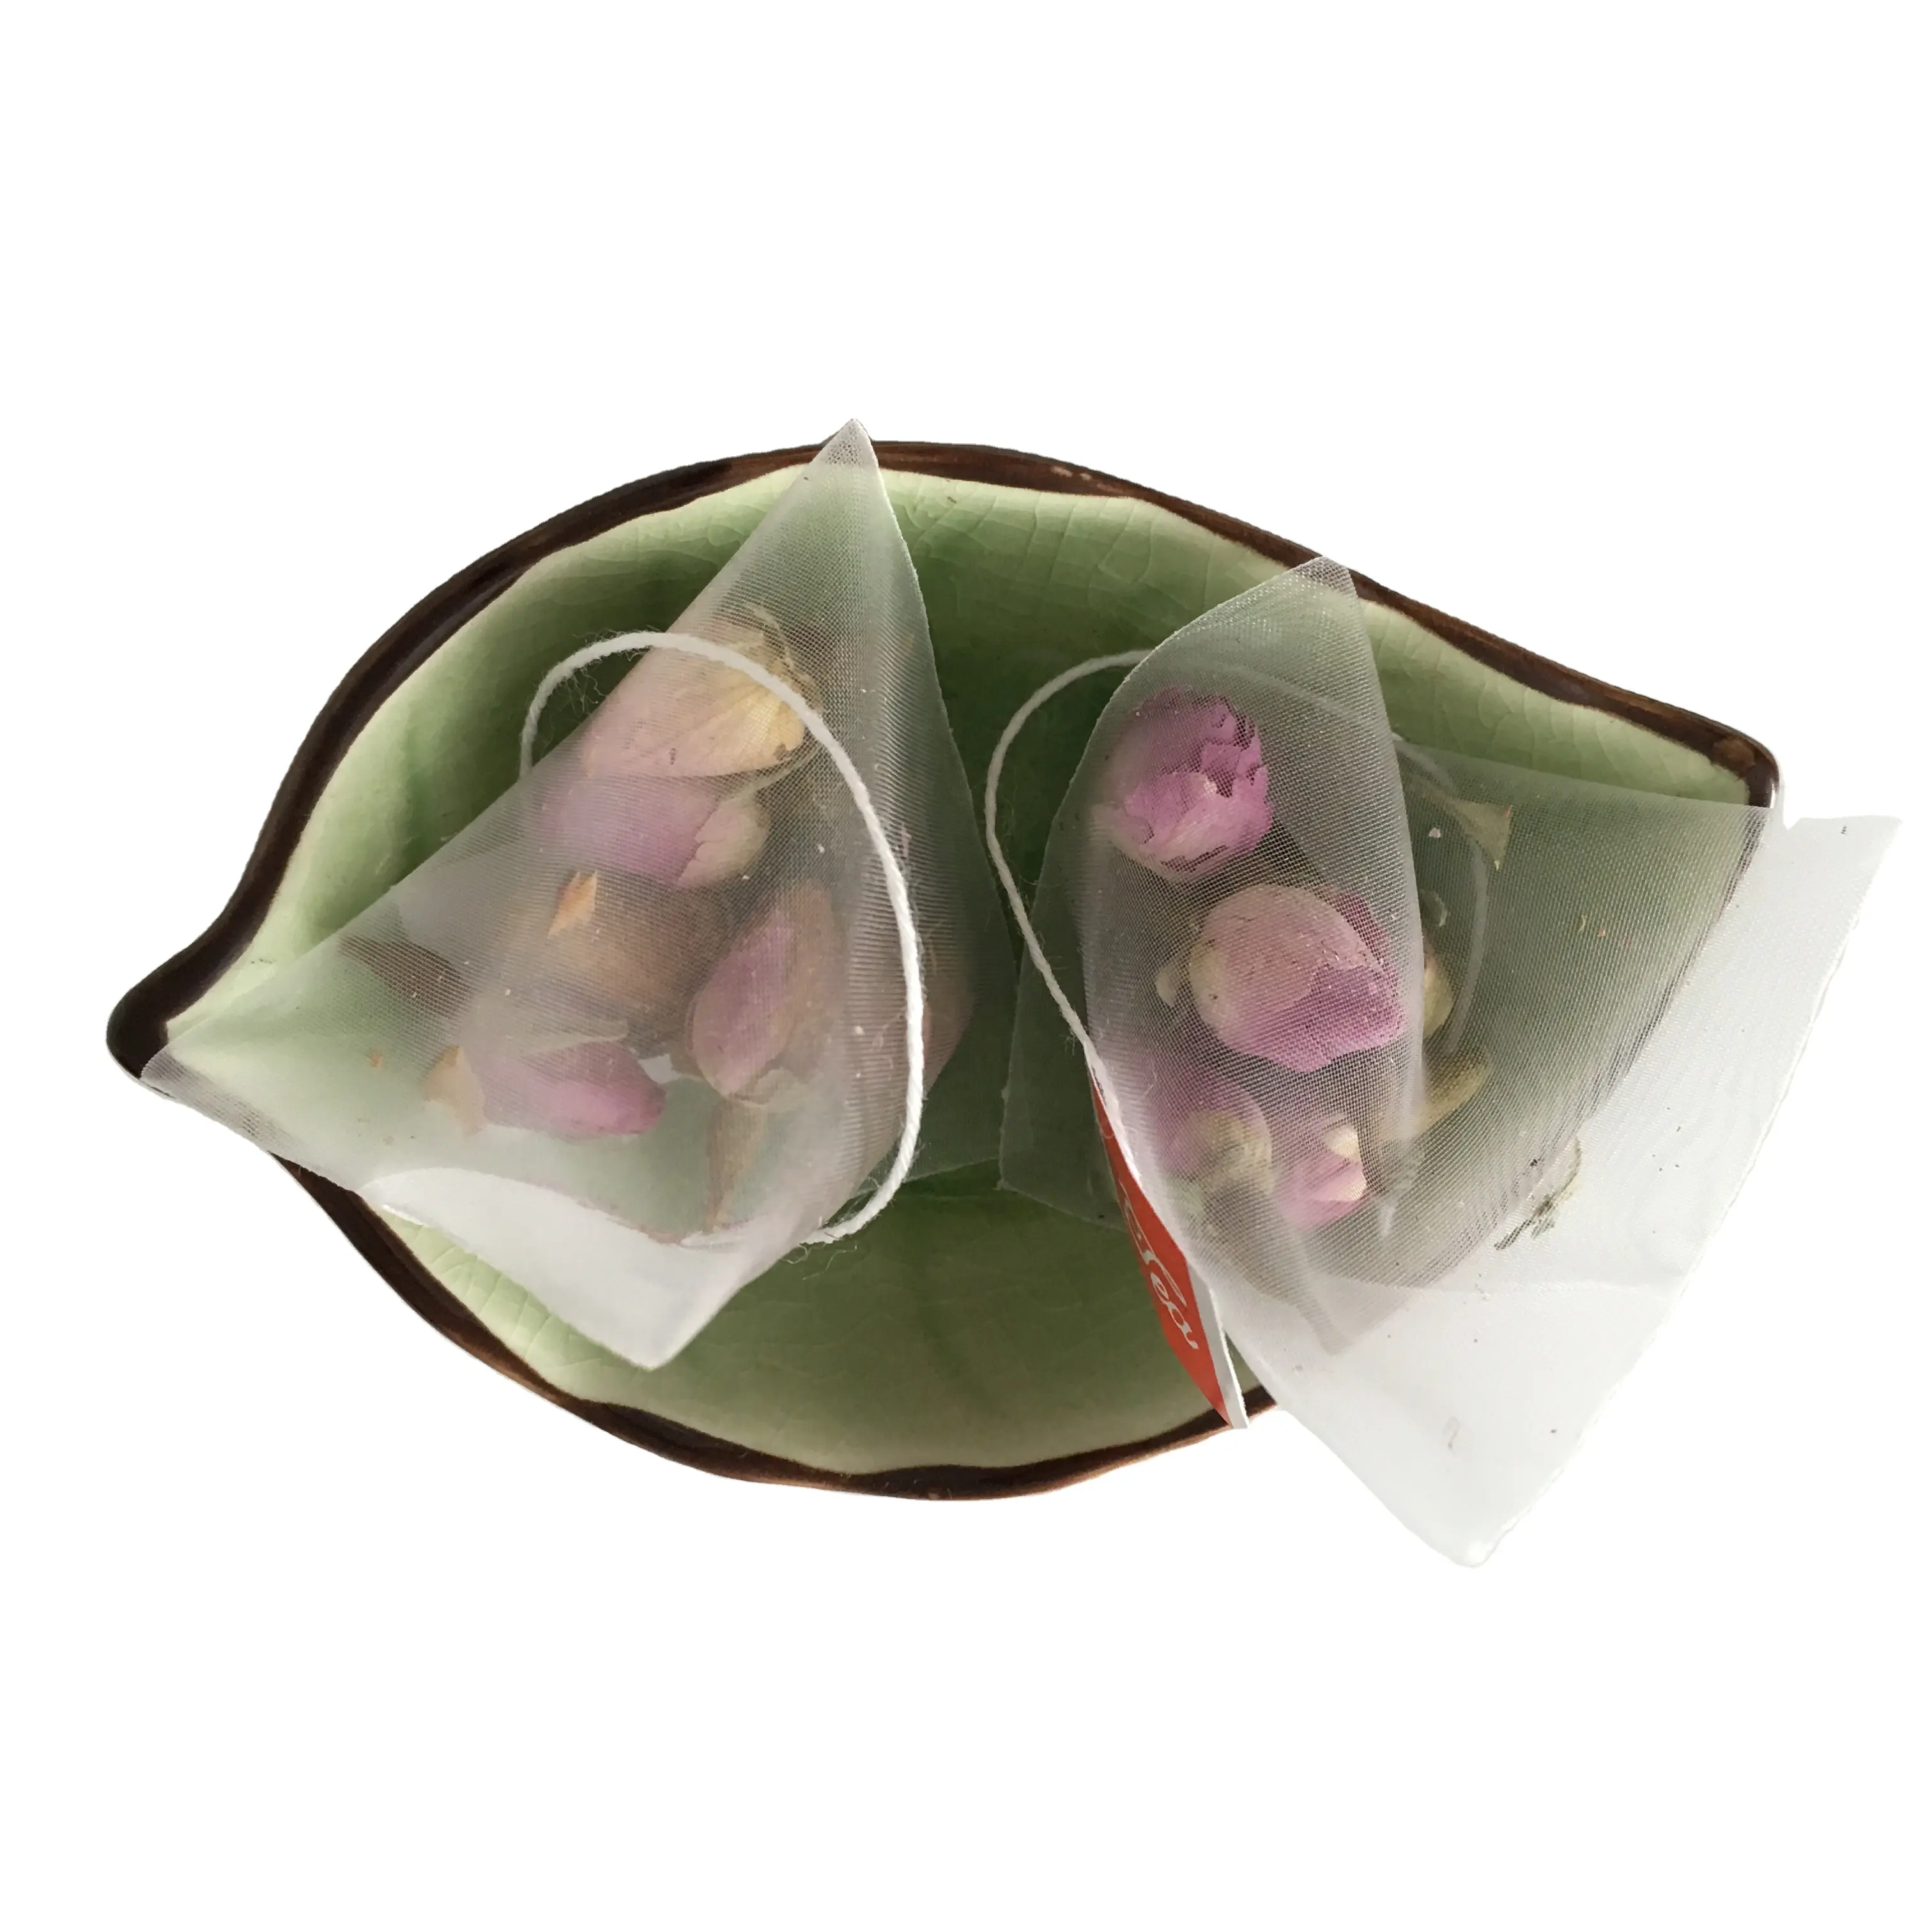 T123 özel kaliteli çay filtre torbası kurutulmuş pembe fransa gül çayı torba özel etiket ile